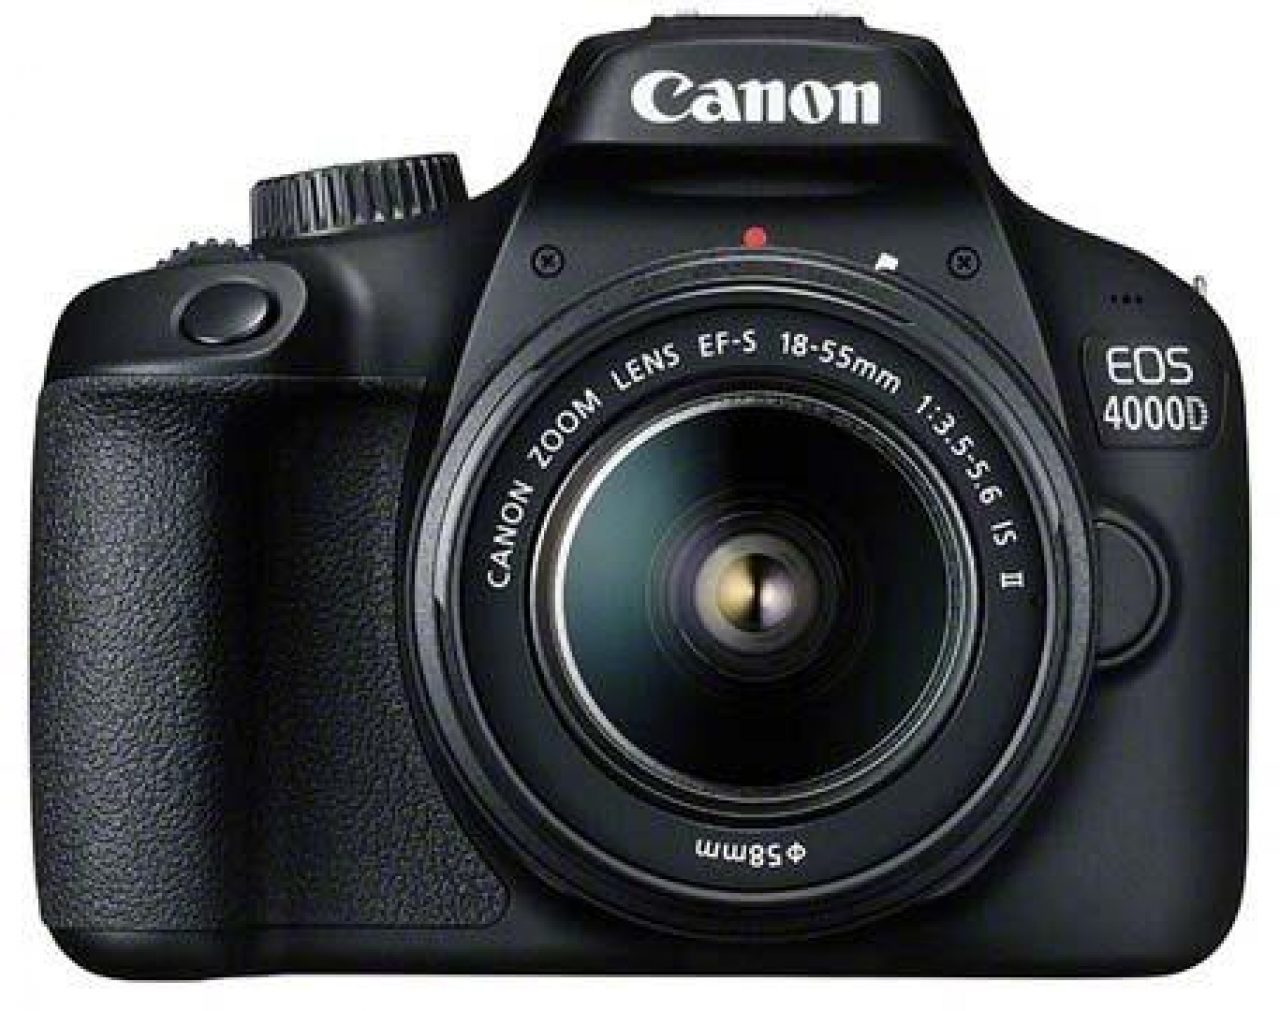 Canon EOS 4000D: Canon EOS 4000D là một trong những máy ảnh chuyên nghiệp tiên tiến nhất của Canon. Với khả năng chụp ảnh độ phân giải cao, EOS 4000D sẽ giúp bạn tạo ra những bức ảnh sống động và chi tiết nhất. Hãy khám phá sức mạnh của nó và mang lại những bức ảnh đẹp nhất cho cuộc sống của bạn.